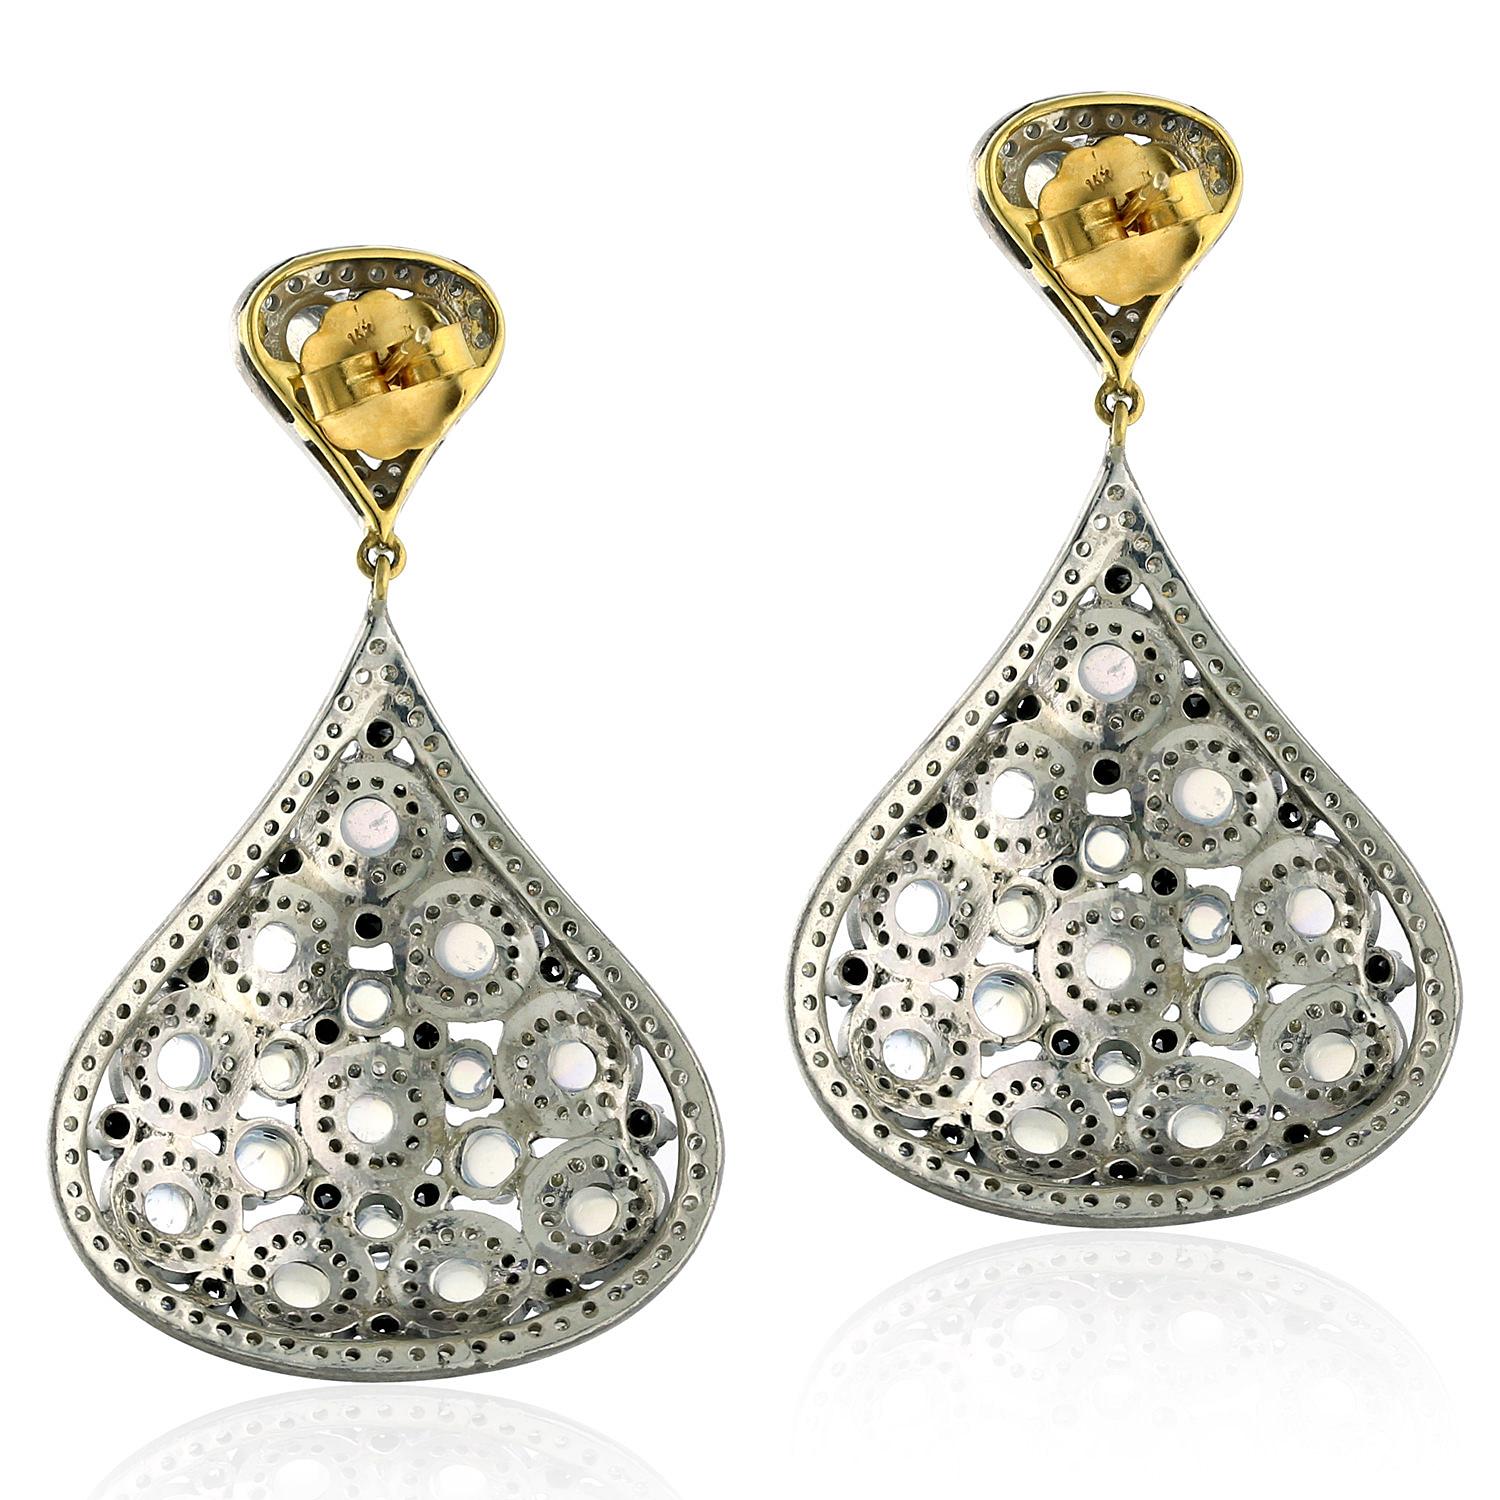 Der Designer-Ohrring aus Mondstein und Diamant in Gold und Silber ist der perfekte Ohrring für das kleine Schwarze.

14kt Gold: 3.08gms
Diamant: 5,94cts
Silber: 23,42g
Mondstein: 10.10cts
